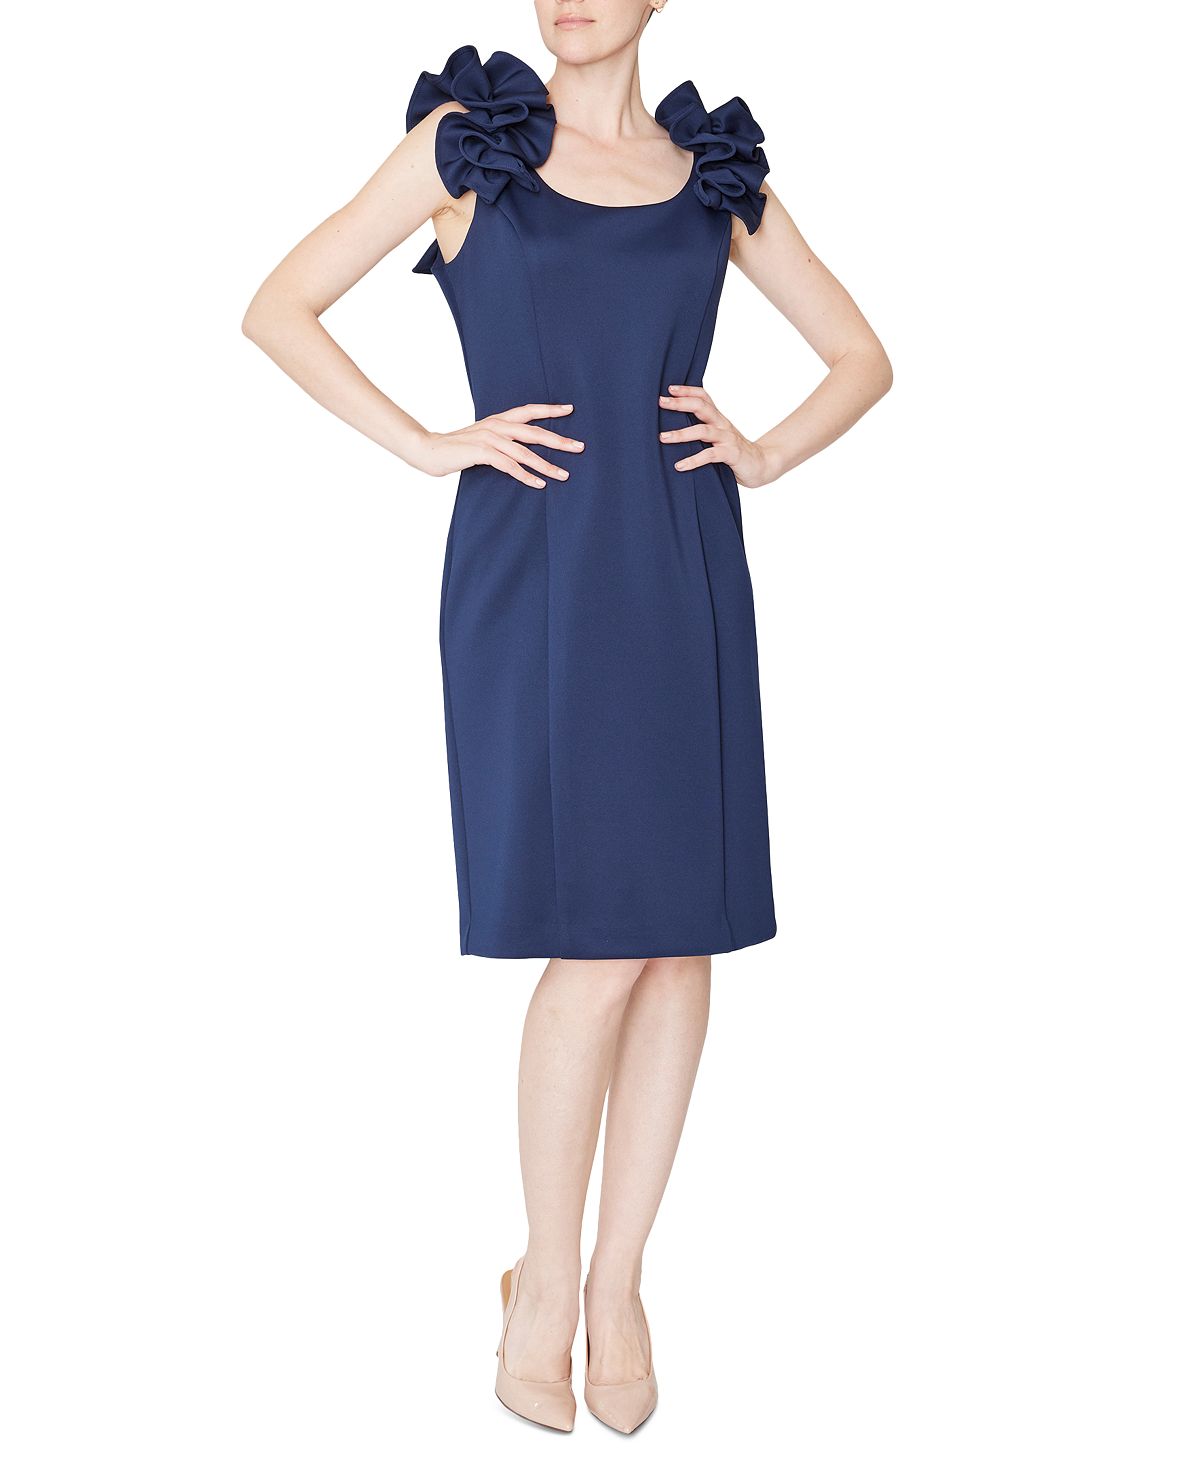 Женское платье без рукавов с рюшами на плечах Donna Ricco, темно-синий женское платье без рукавов с бантом на плечах hope